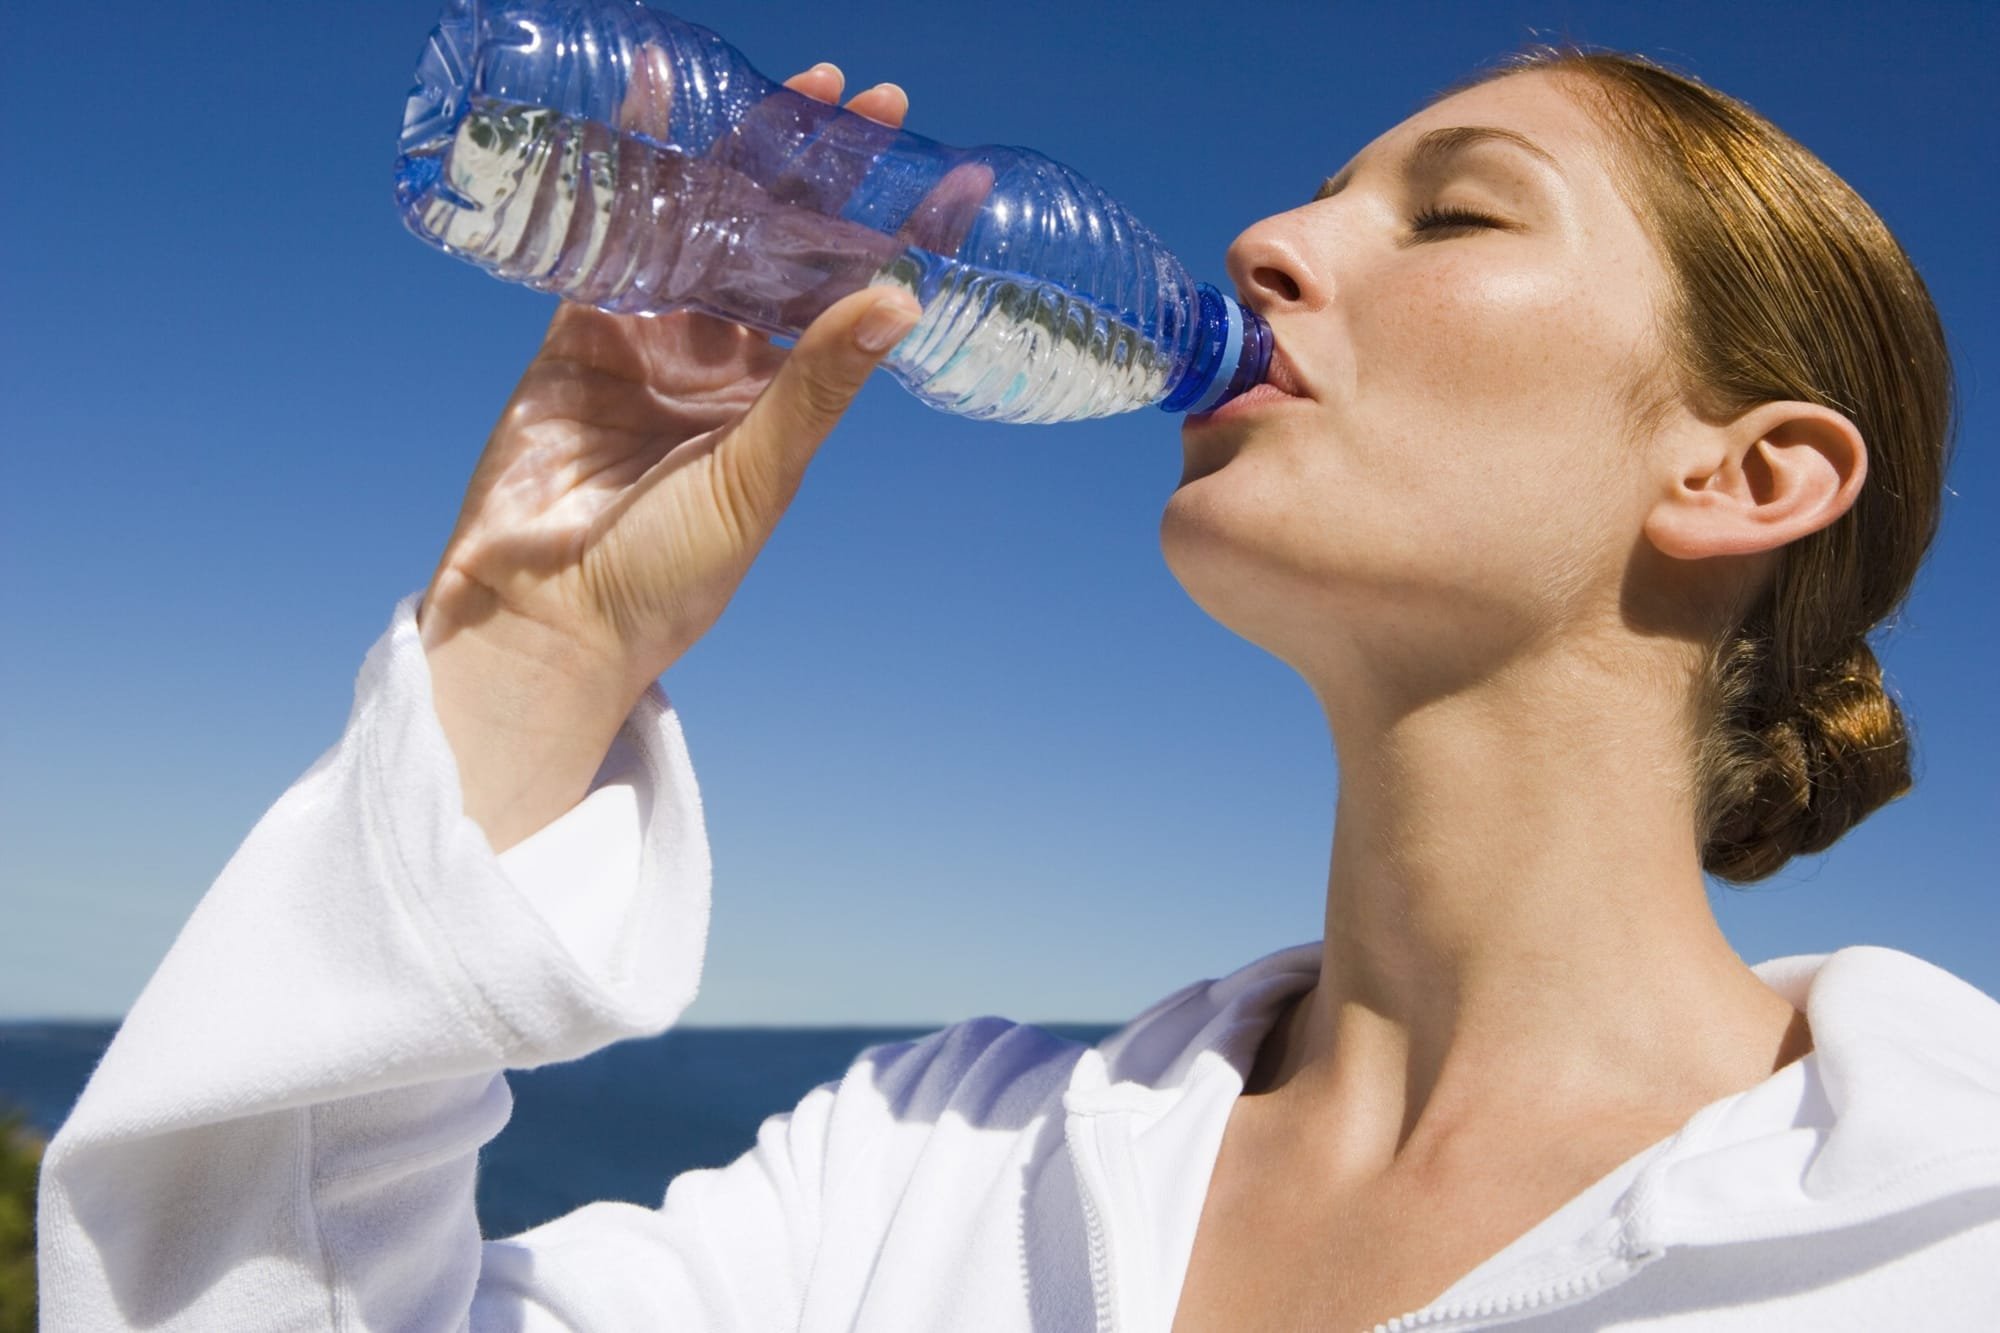 ما كمية الماء التي يجب شربها في اليوم لإطالة العمر؟